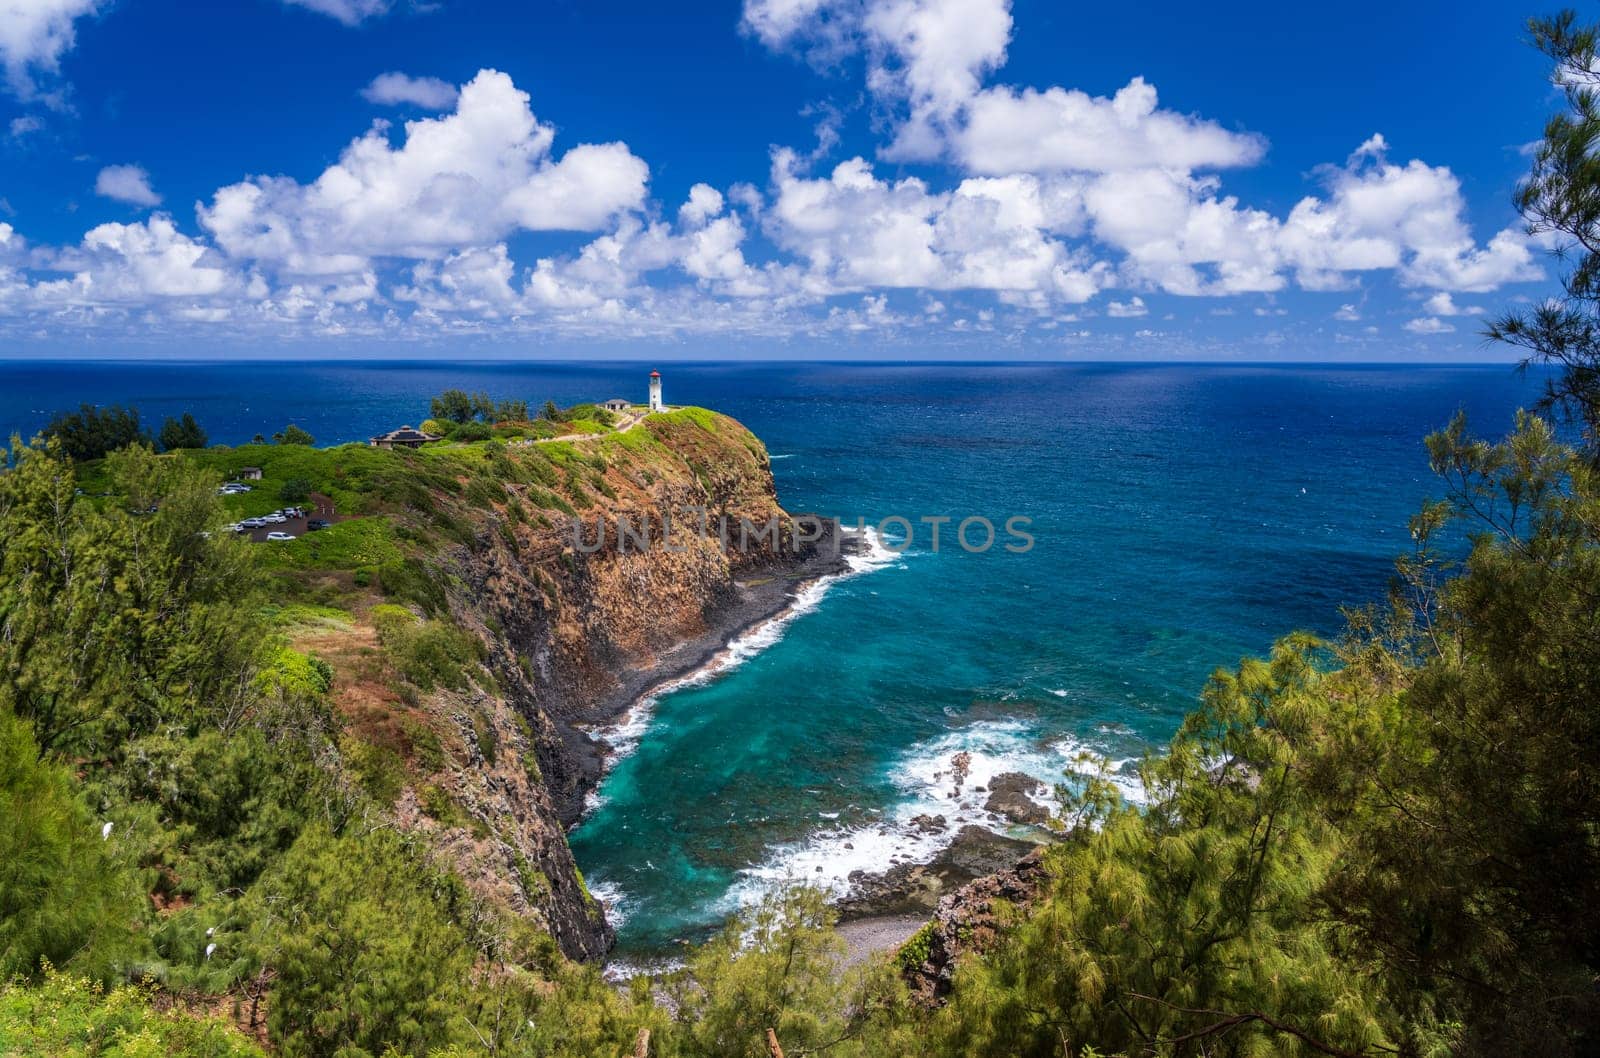 Kilauae lighthouse on headland against blue sky on Kauai by steheap